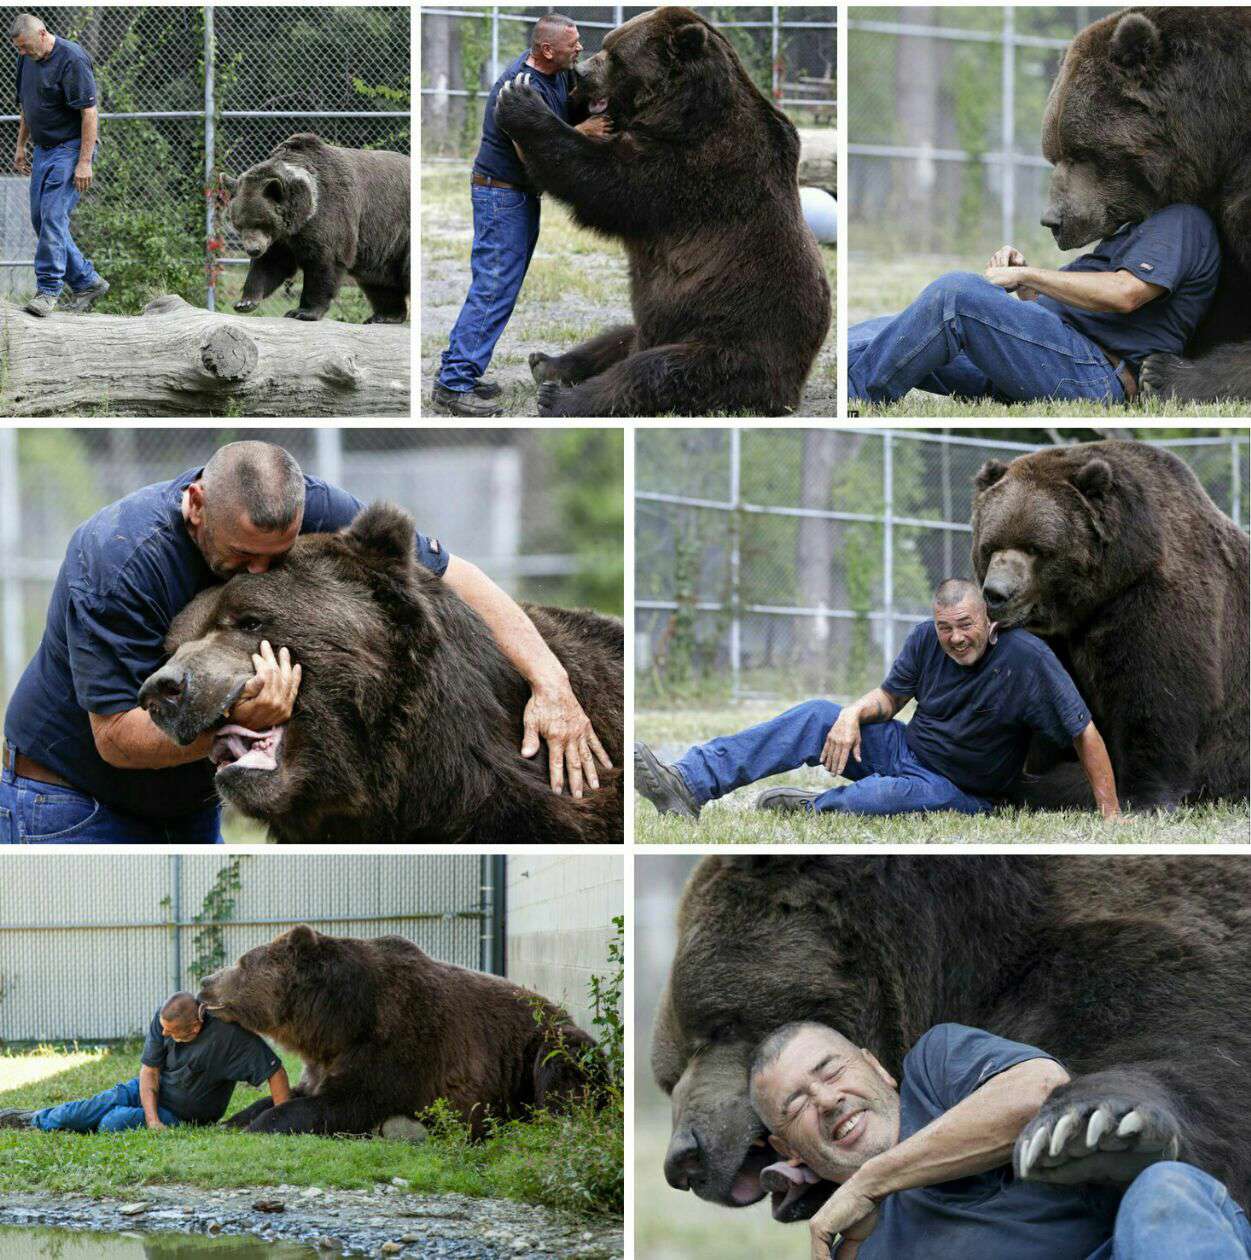 دوستی صمیمانه مرد و خرس غول‌پیکر

رابطه صمیمانه "جیم" و یک خرس غول پیکر ۸۰۰ کیلوگرمی به نام "جیمبو" تصاویر باورنکردنی خلق کرده است